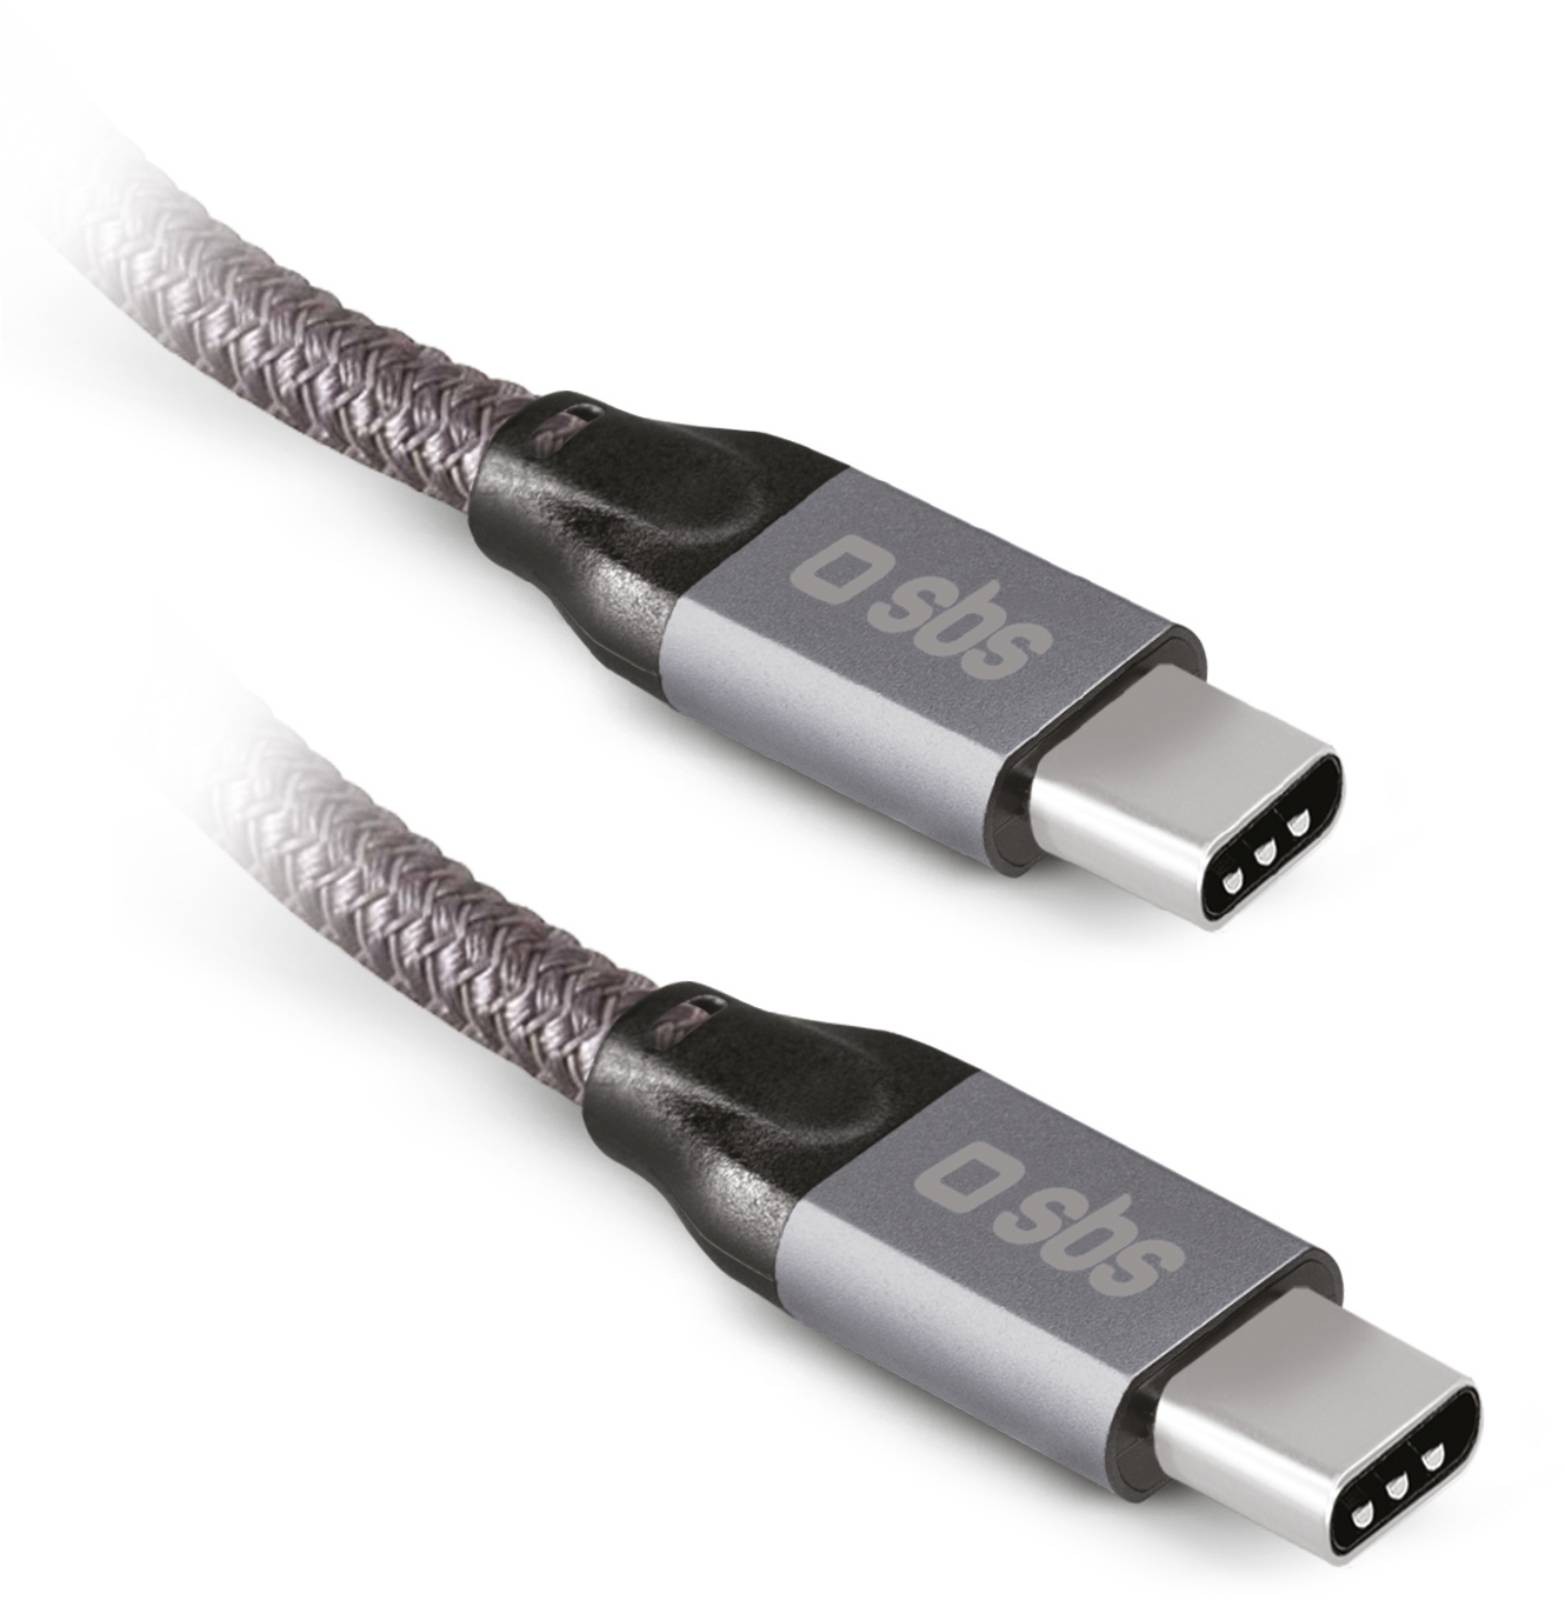 SBS Câble USB  données & recharge USB-C - USB-C 240W avec lecture vidéo - CABL-2USBC-LECTVIDEO